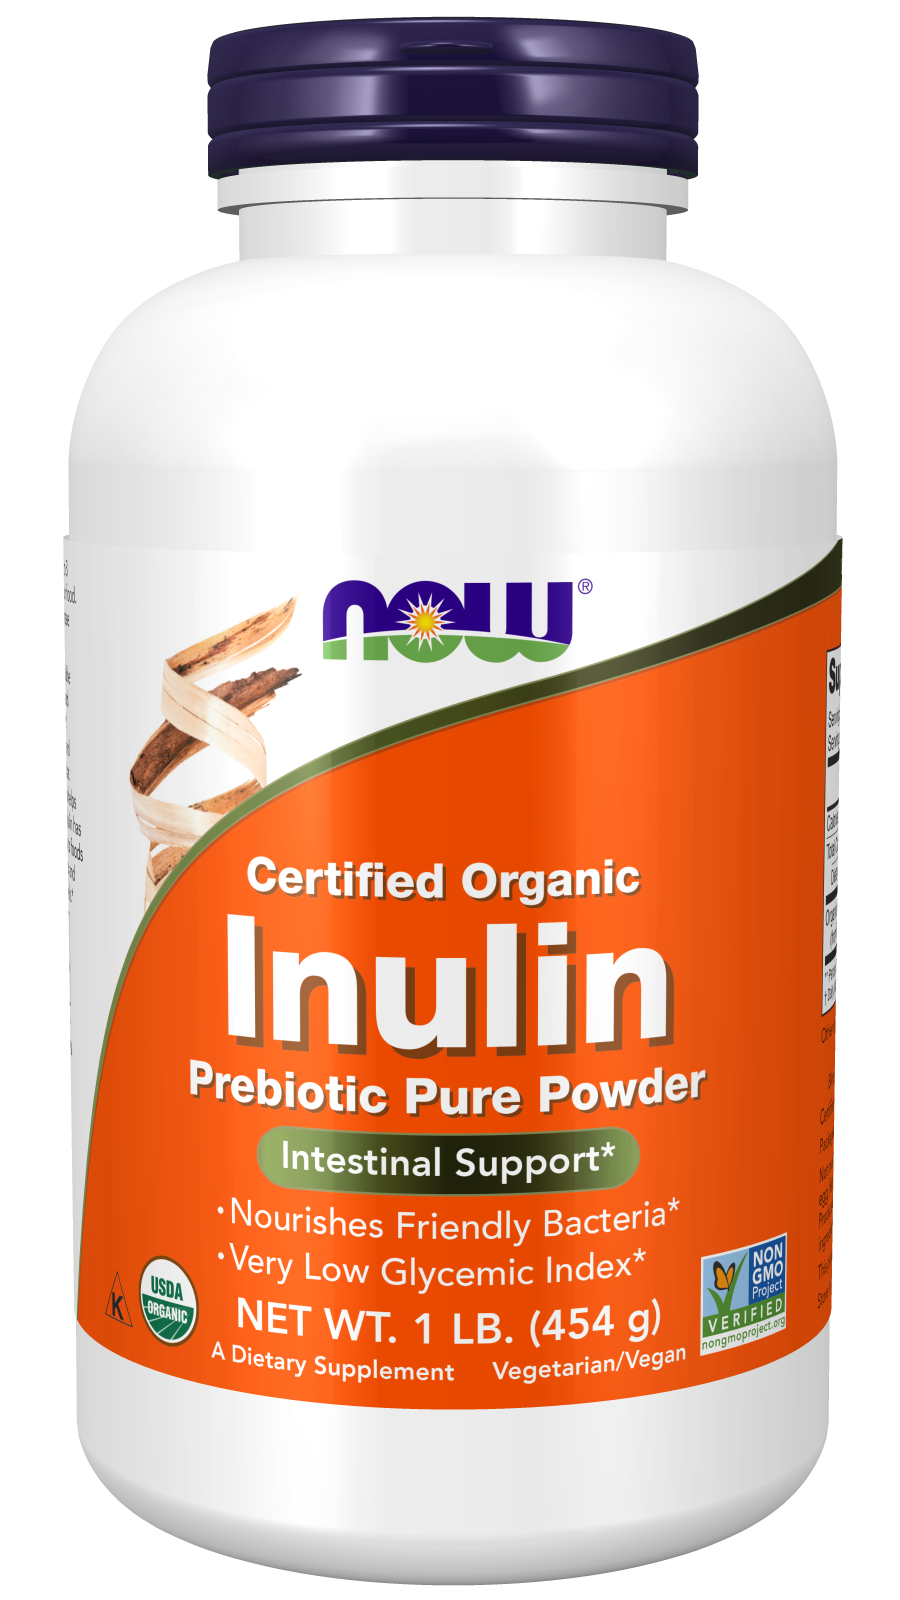 Inulin Prebiotic Pure Powder, Organic - 1 lb. Bottle